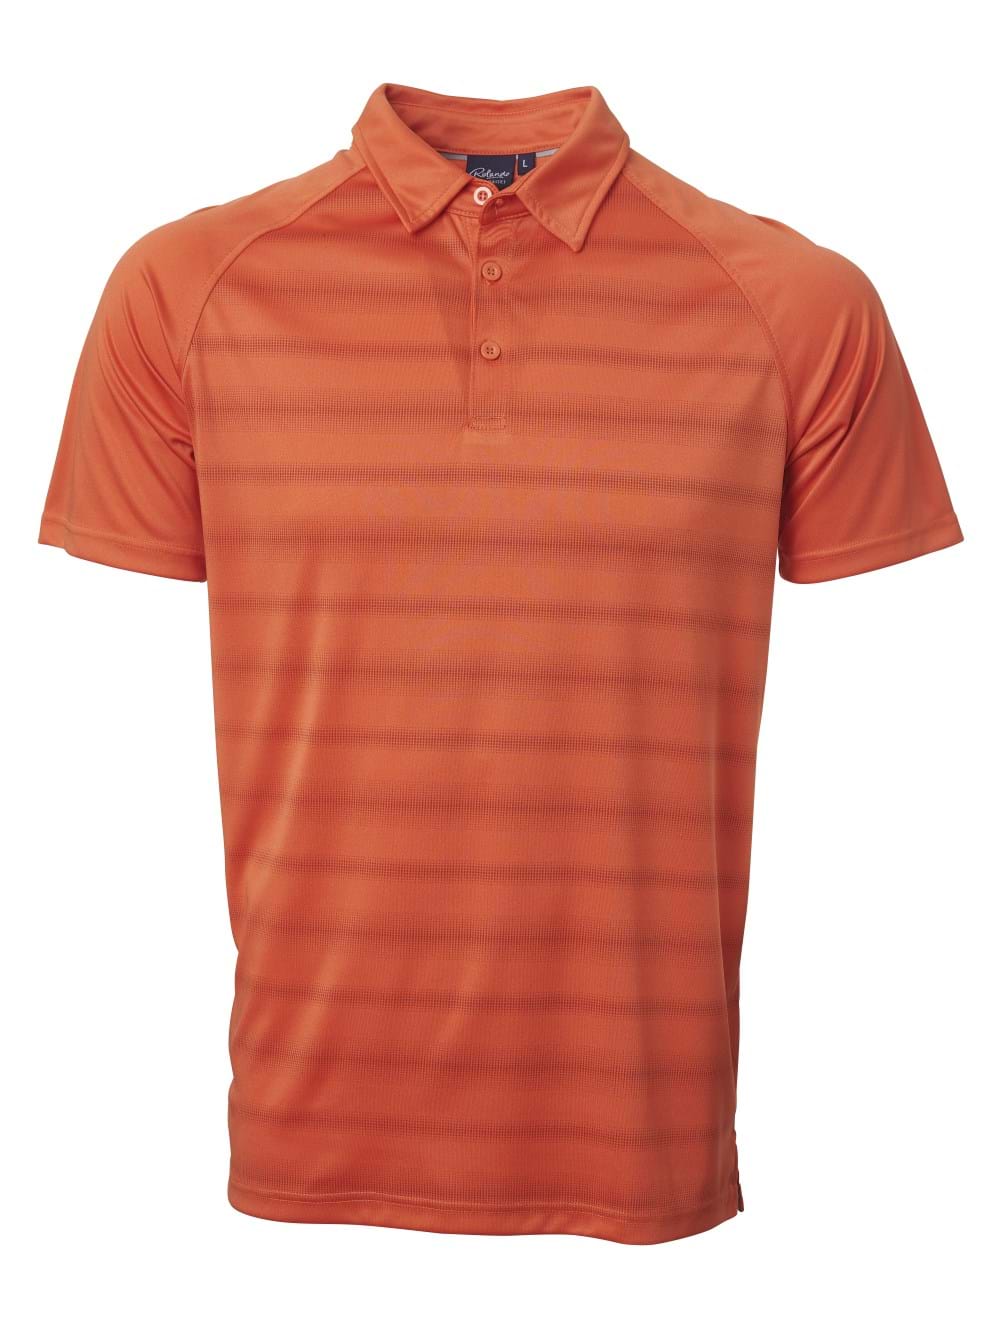 Pivot Golfer - Orange / L